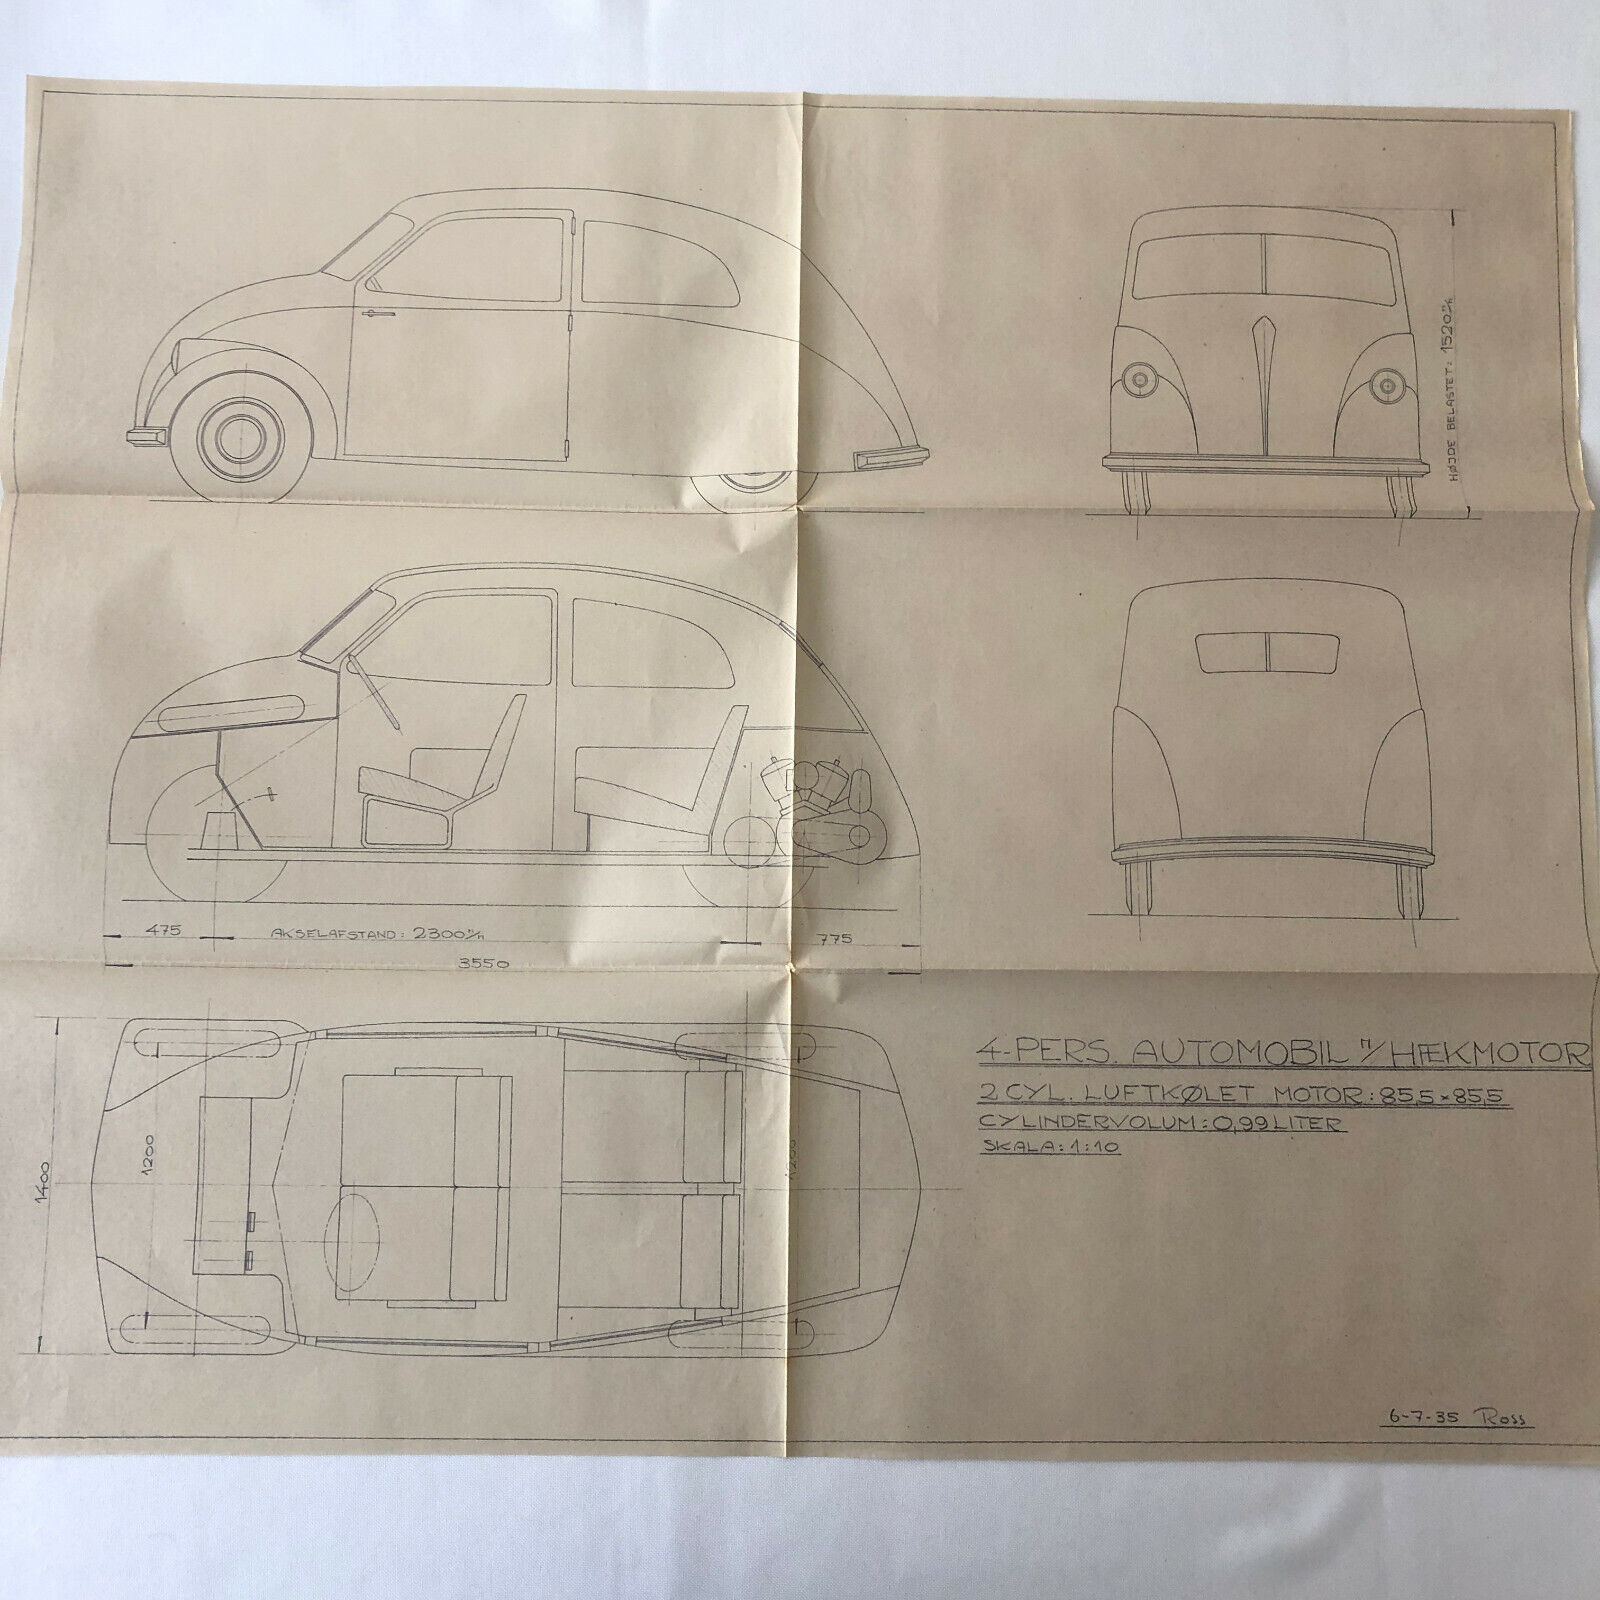 1935 Coachbuilder Car Design Blueprint Rendering Blue Print 2-Door Body